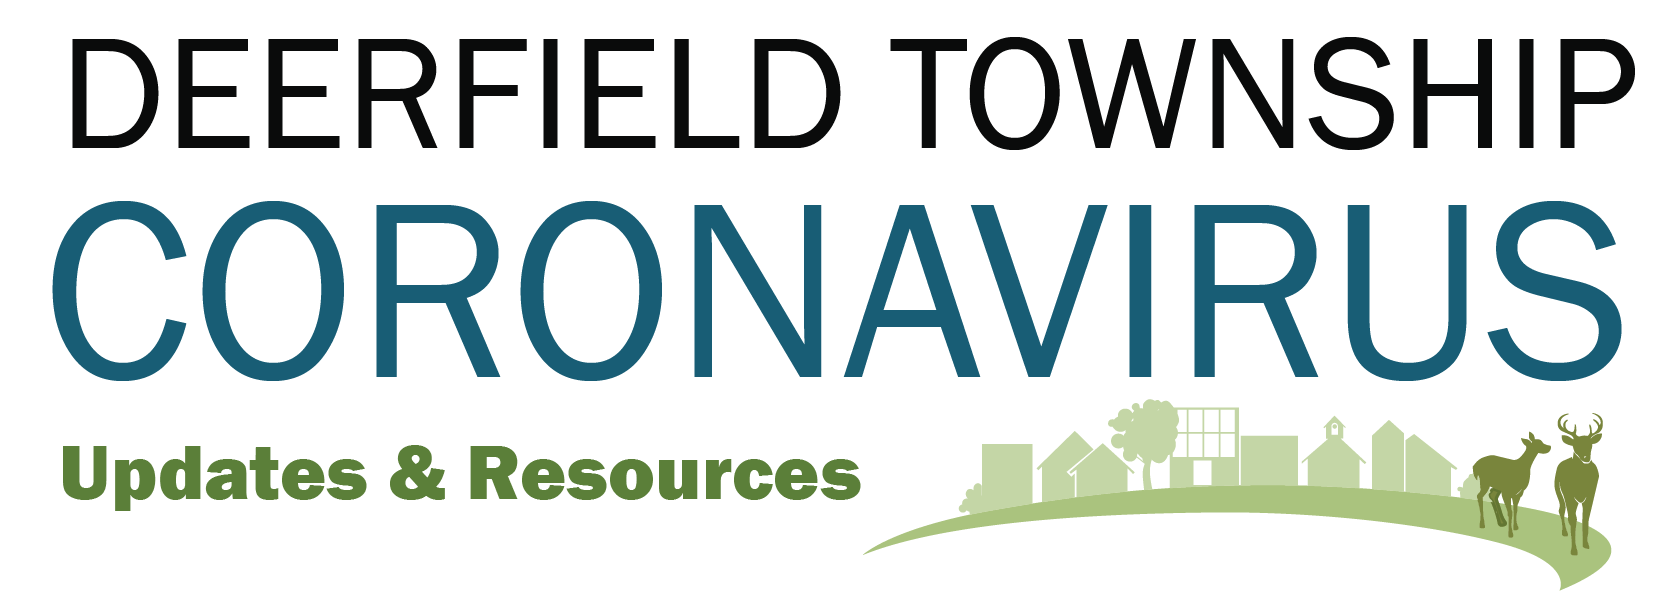 Deerfield Township Coronavirus Updates